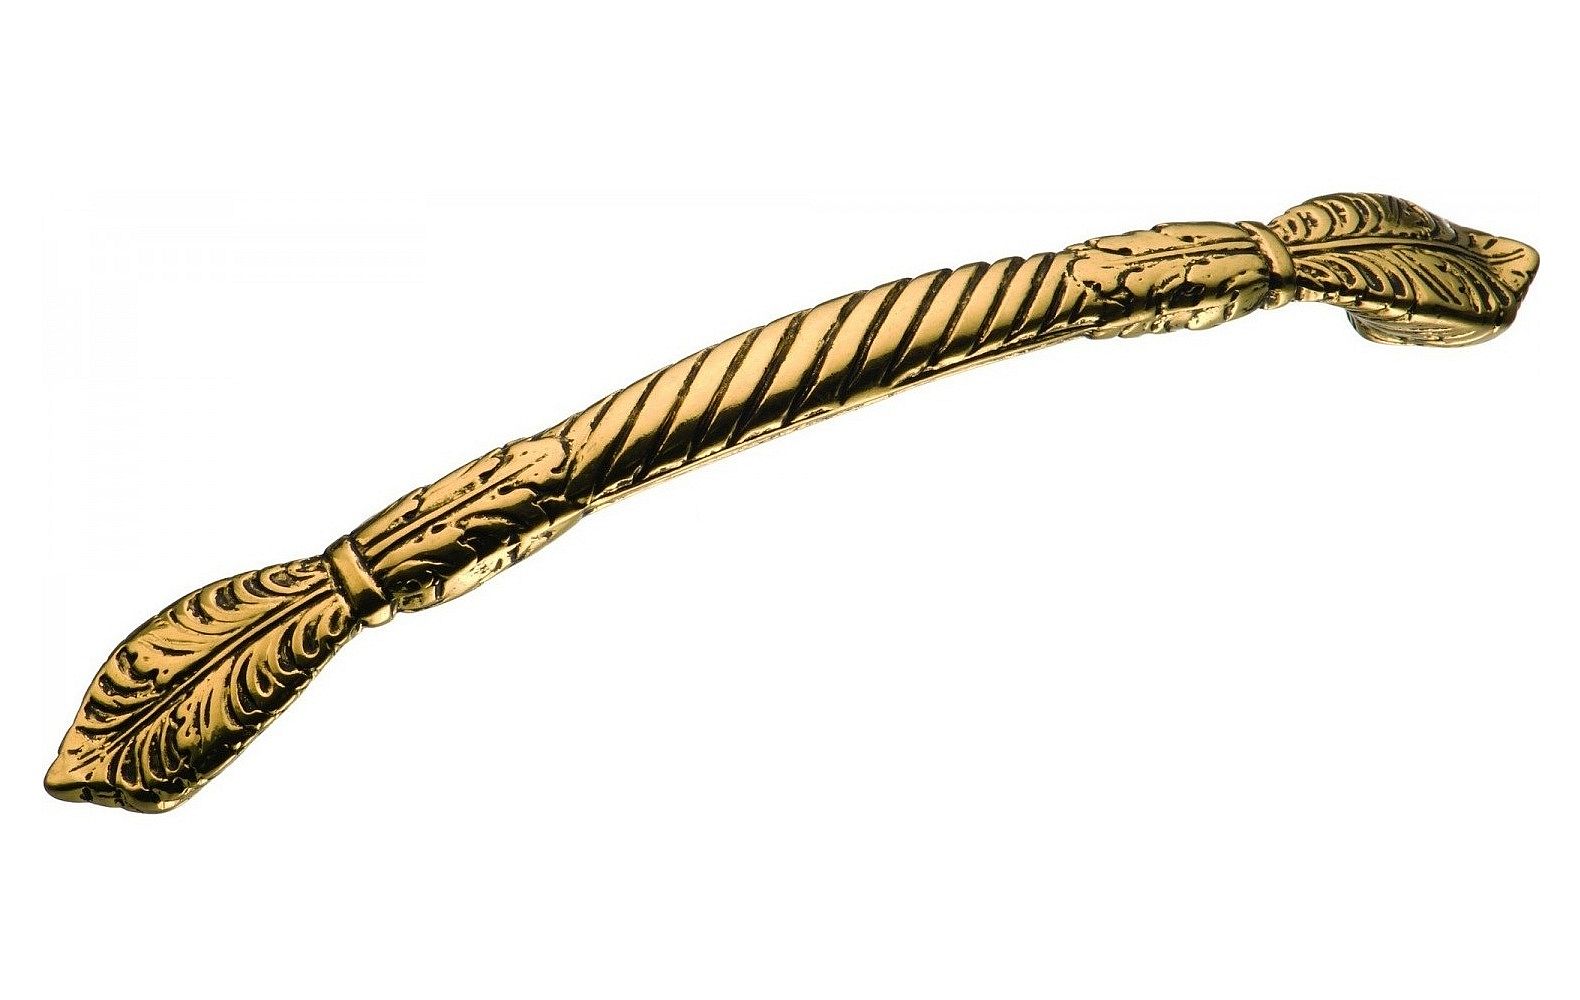 Ручка мебельная скоба 160мм золото античное 15.858.160.28 Brass / 69269 / оптом и в розницу / мебельная фурнитура "ЛАВР"